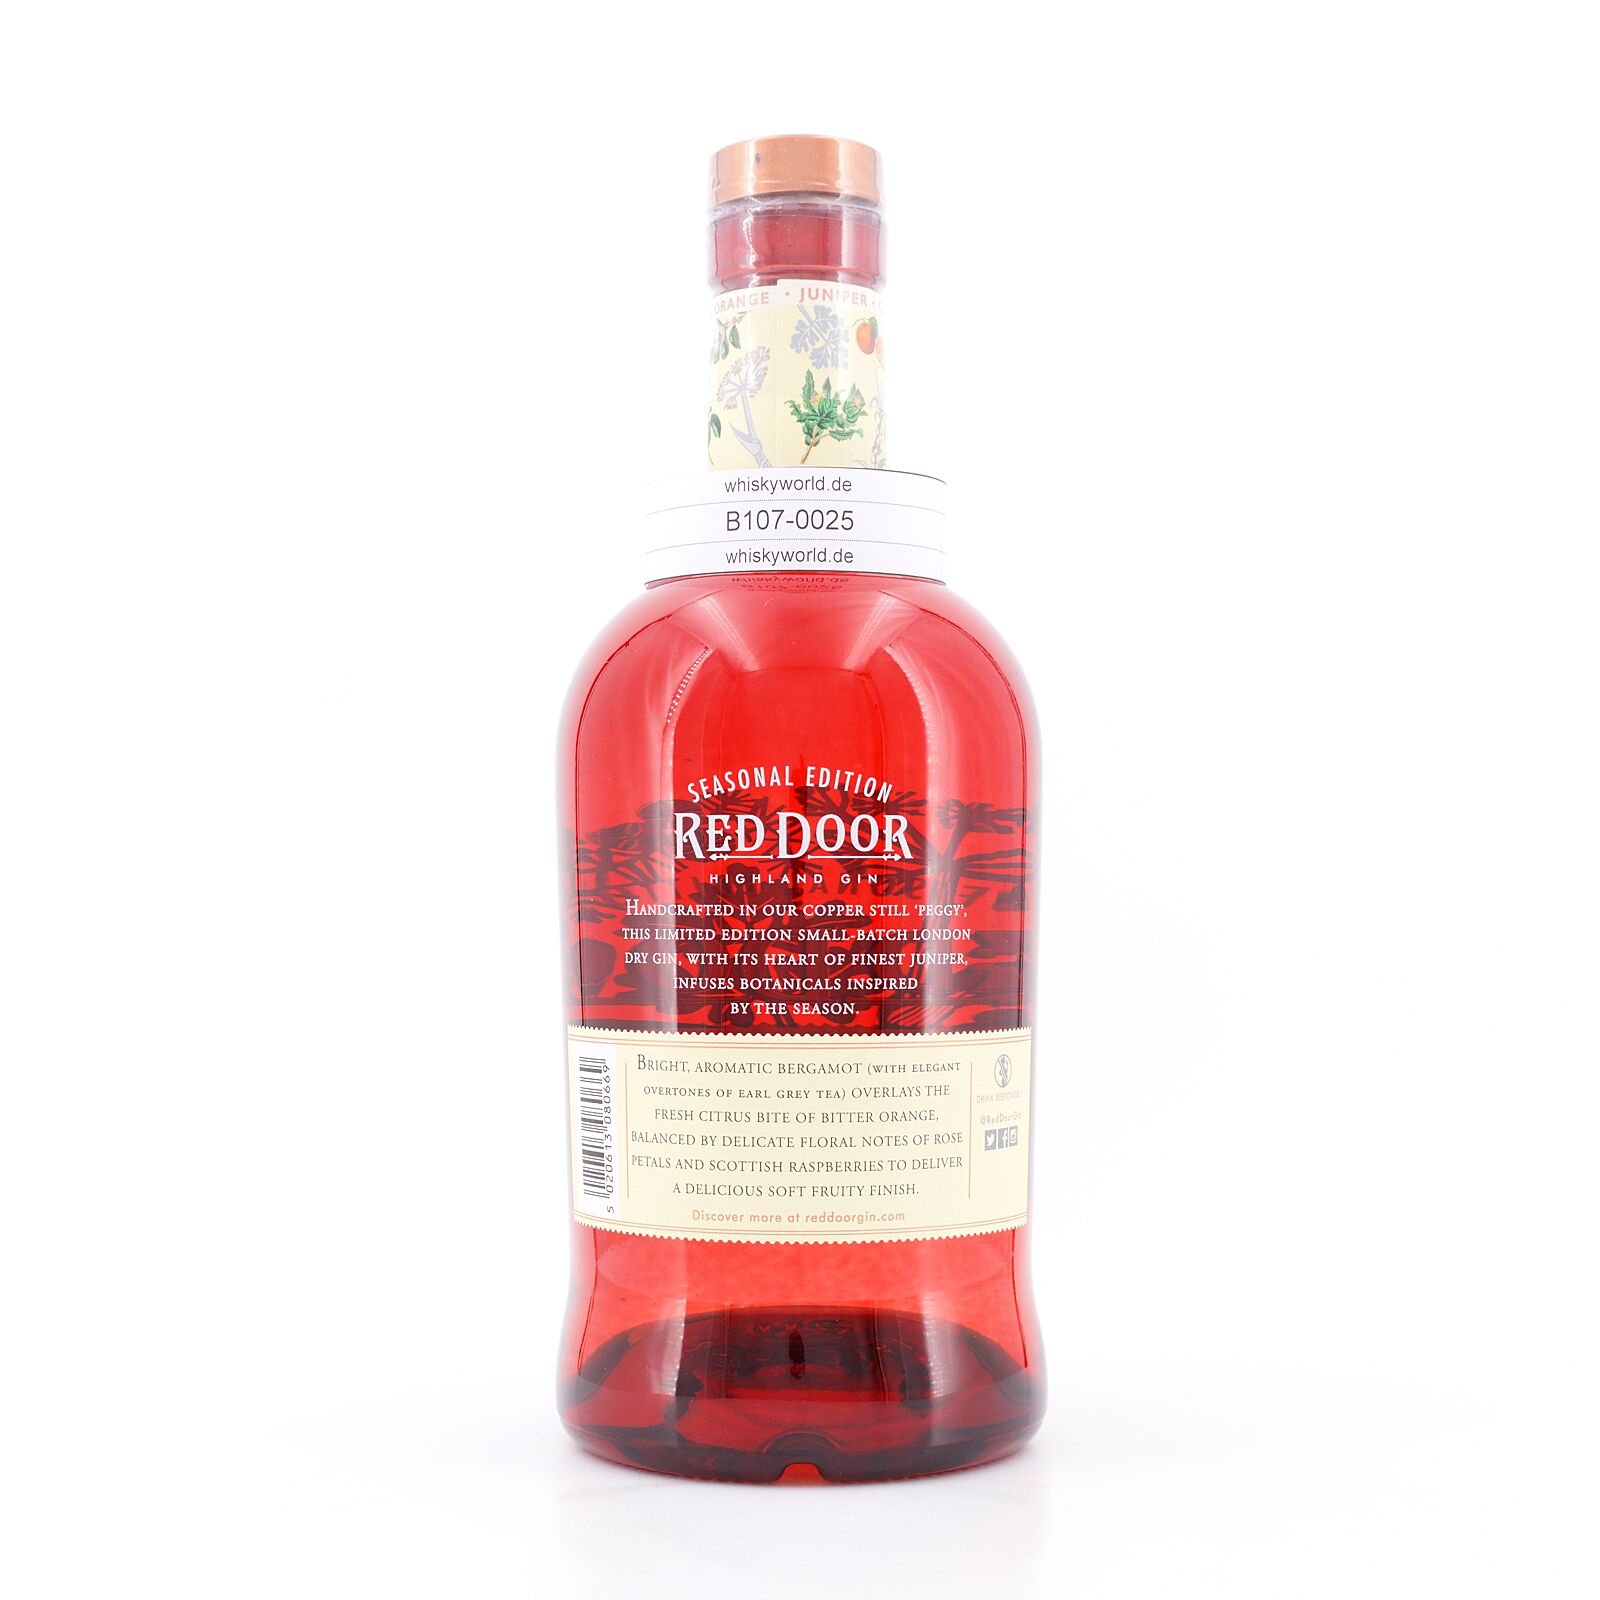 Benromach Red Door Highland Gin Summer Edition 0,70 Liter/ 45.0% vol